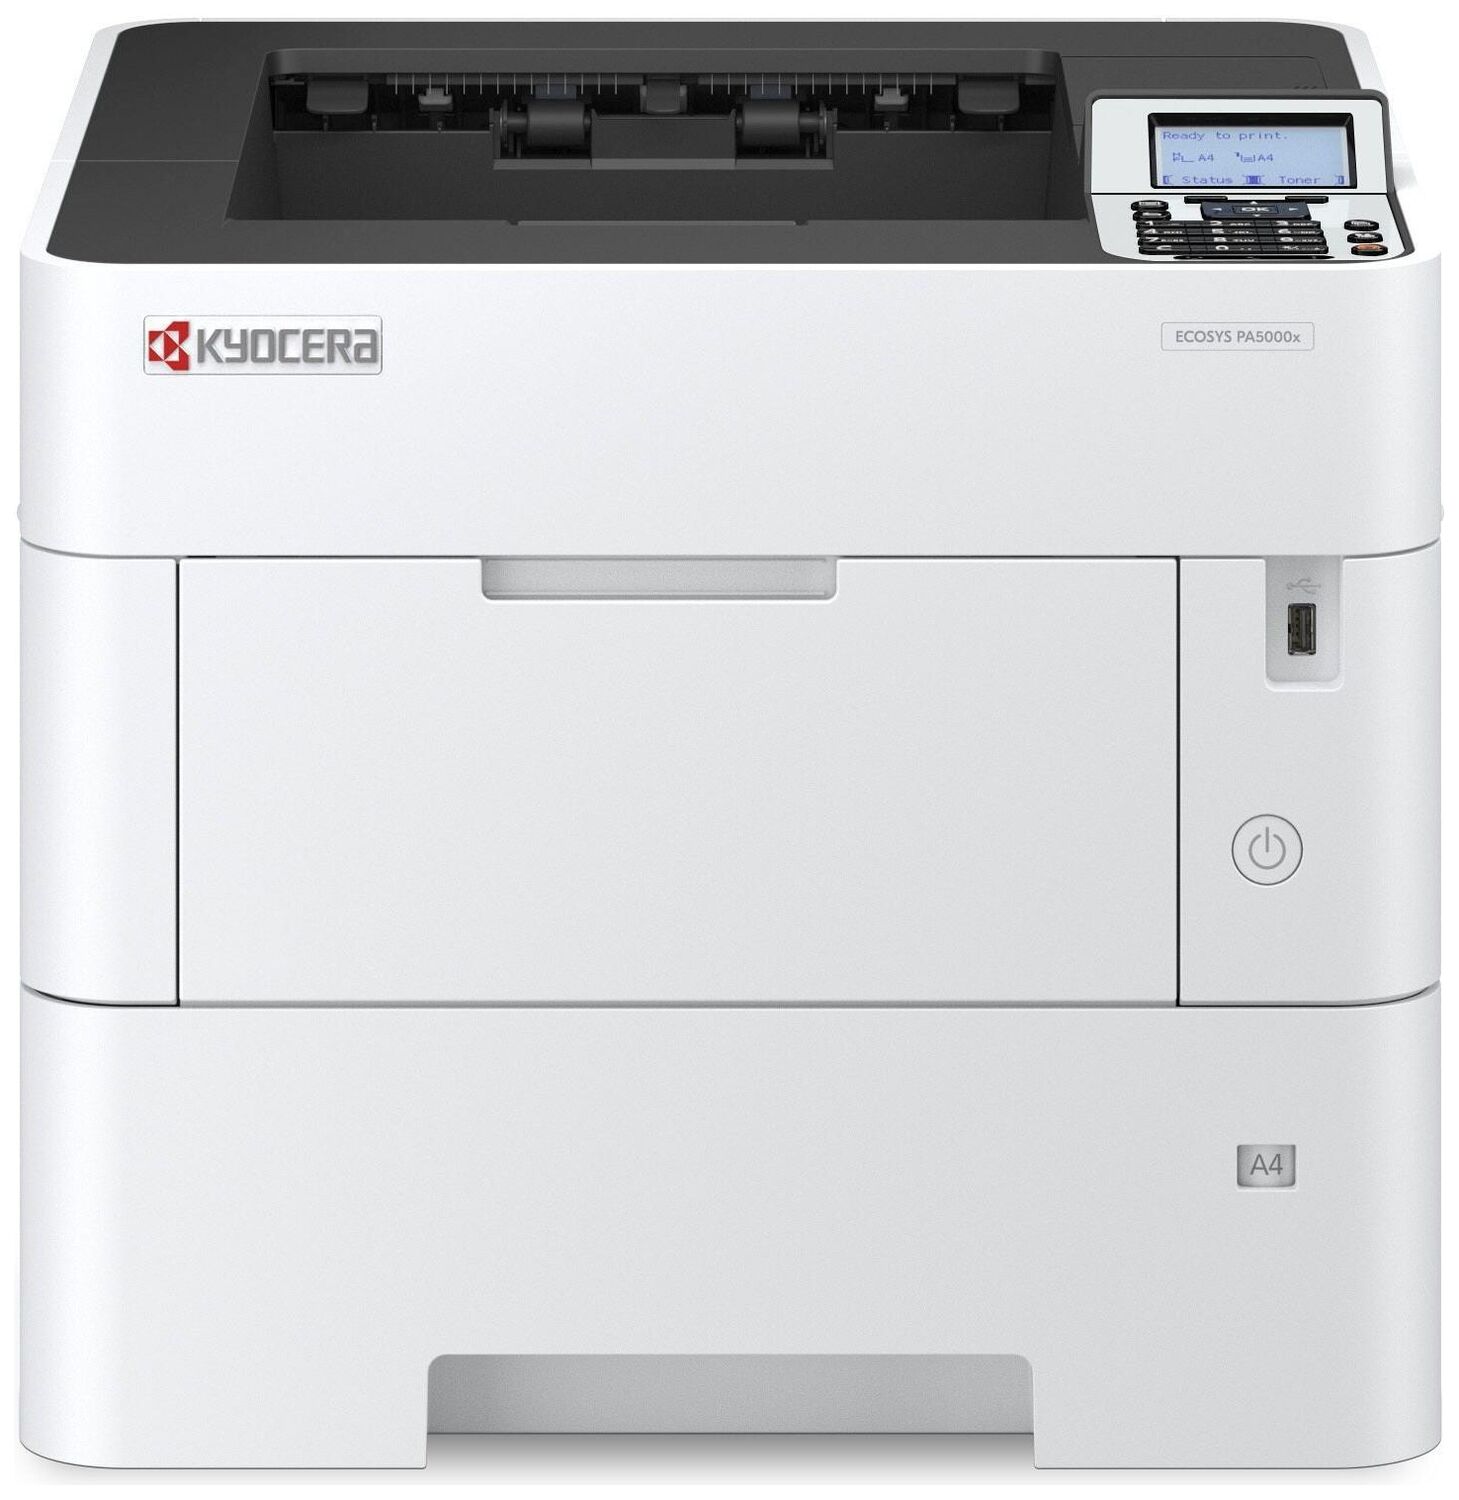 Принтер Kyocera Kyocera ECOSYS PA5000x 110C0X3NL0/A4 черно-белый/печать Лазерный 1200x1200dpi 50стр.мин/ Сетевой интерфе